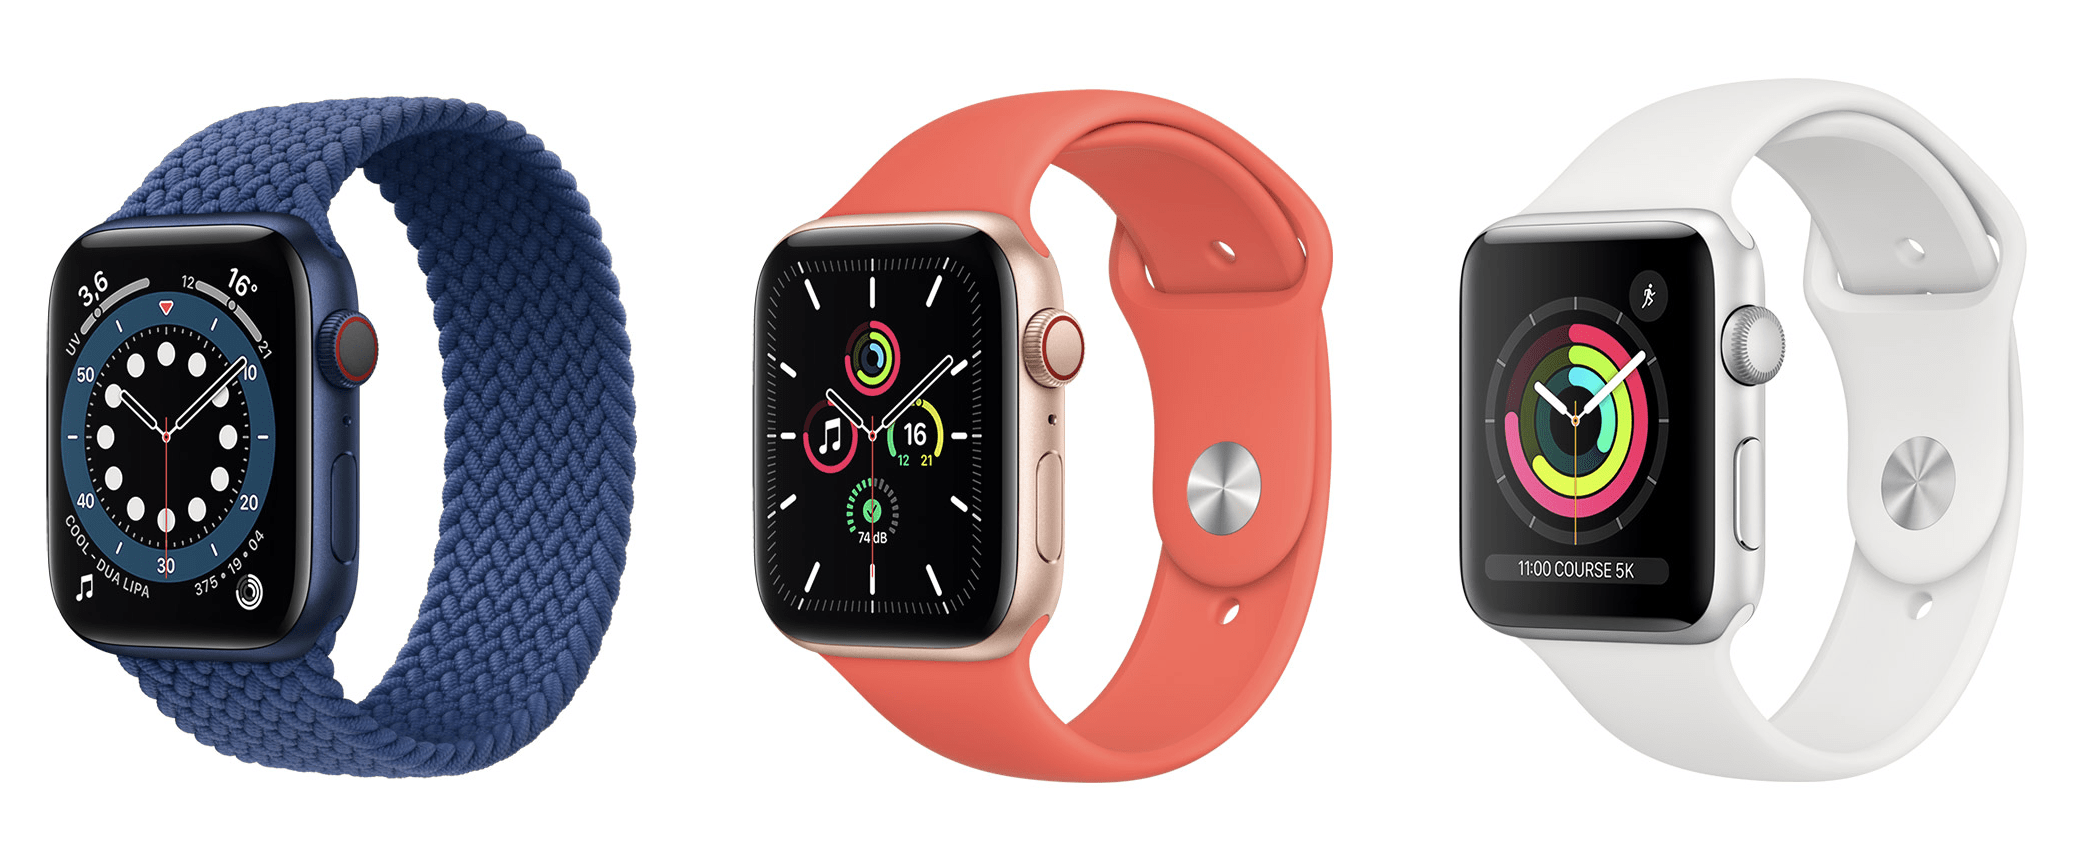 Modèles d'Apple Watch au catalogue 2020